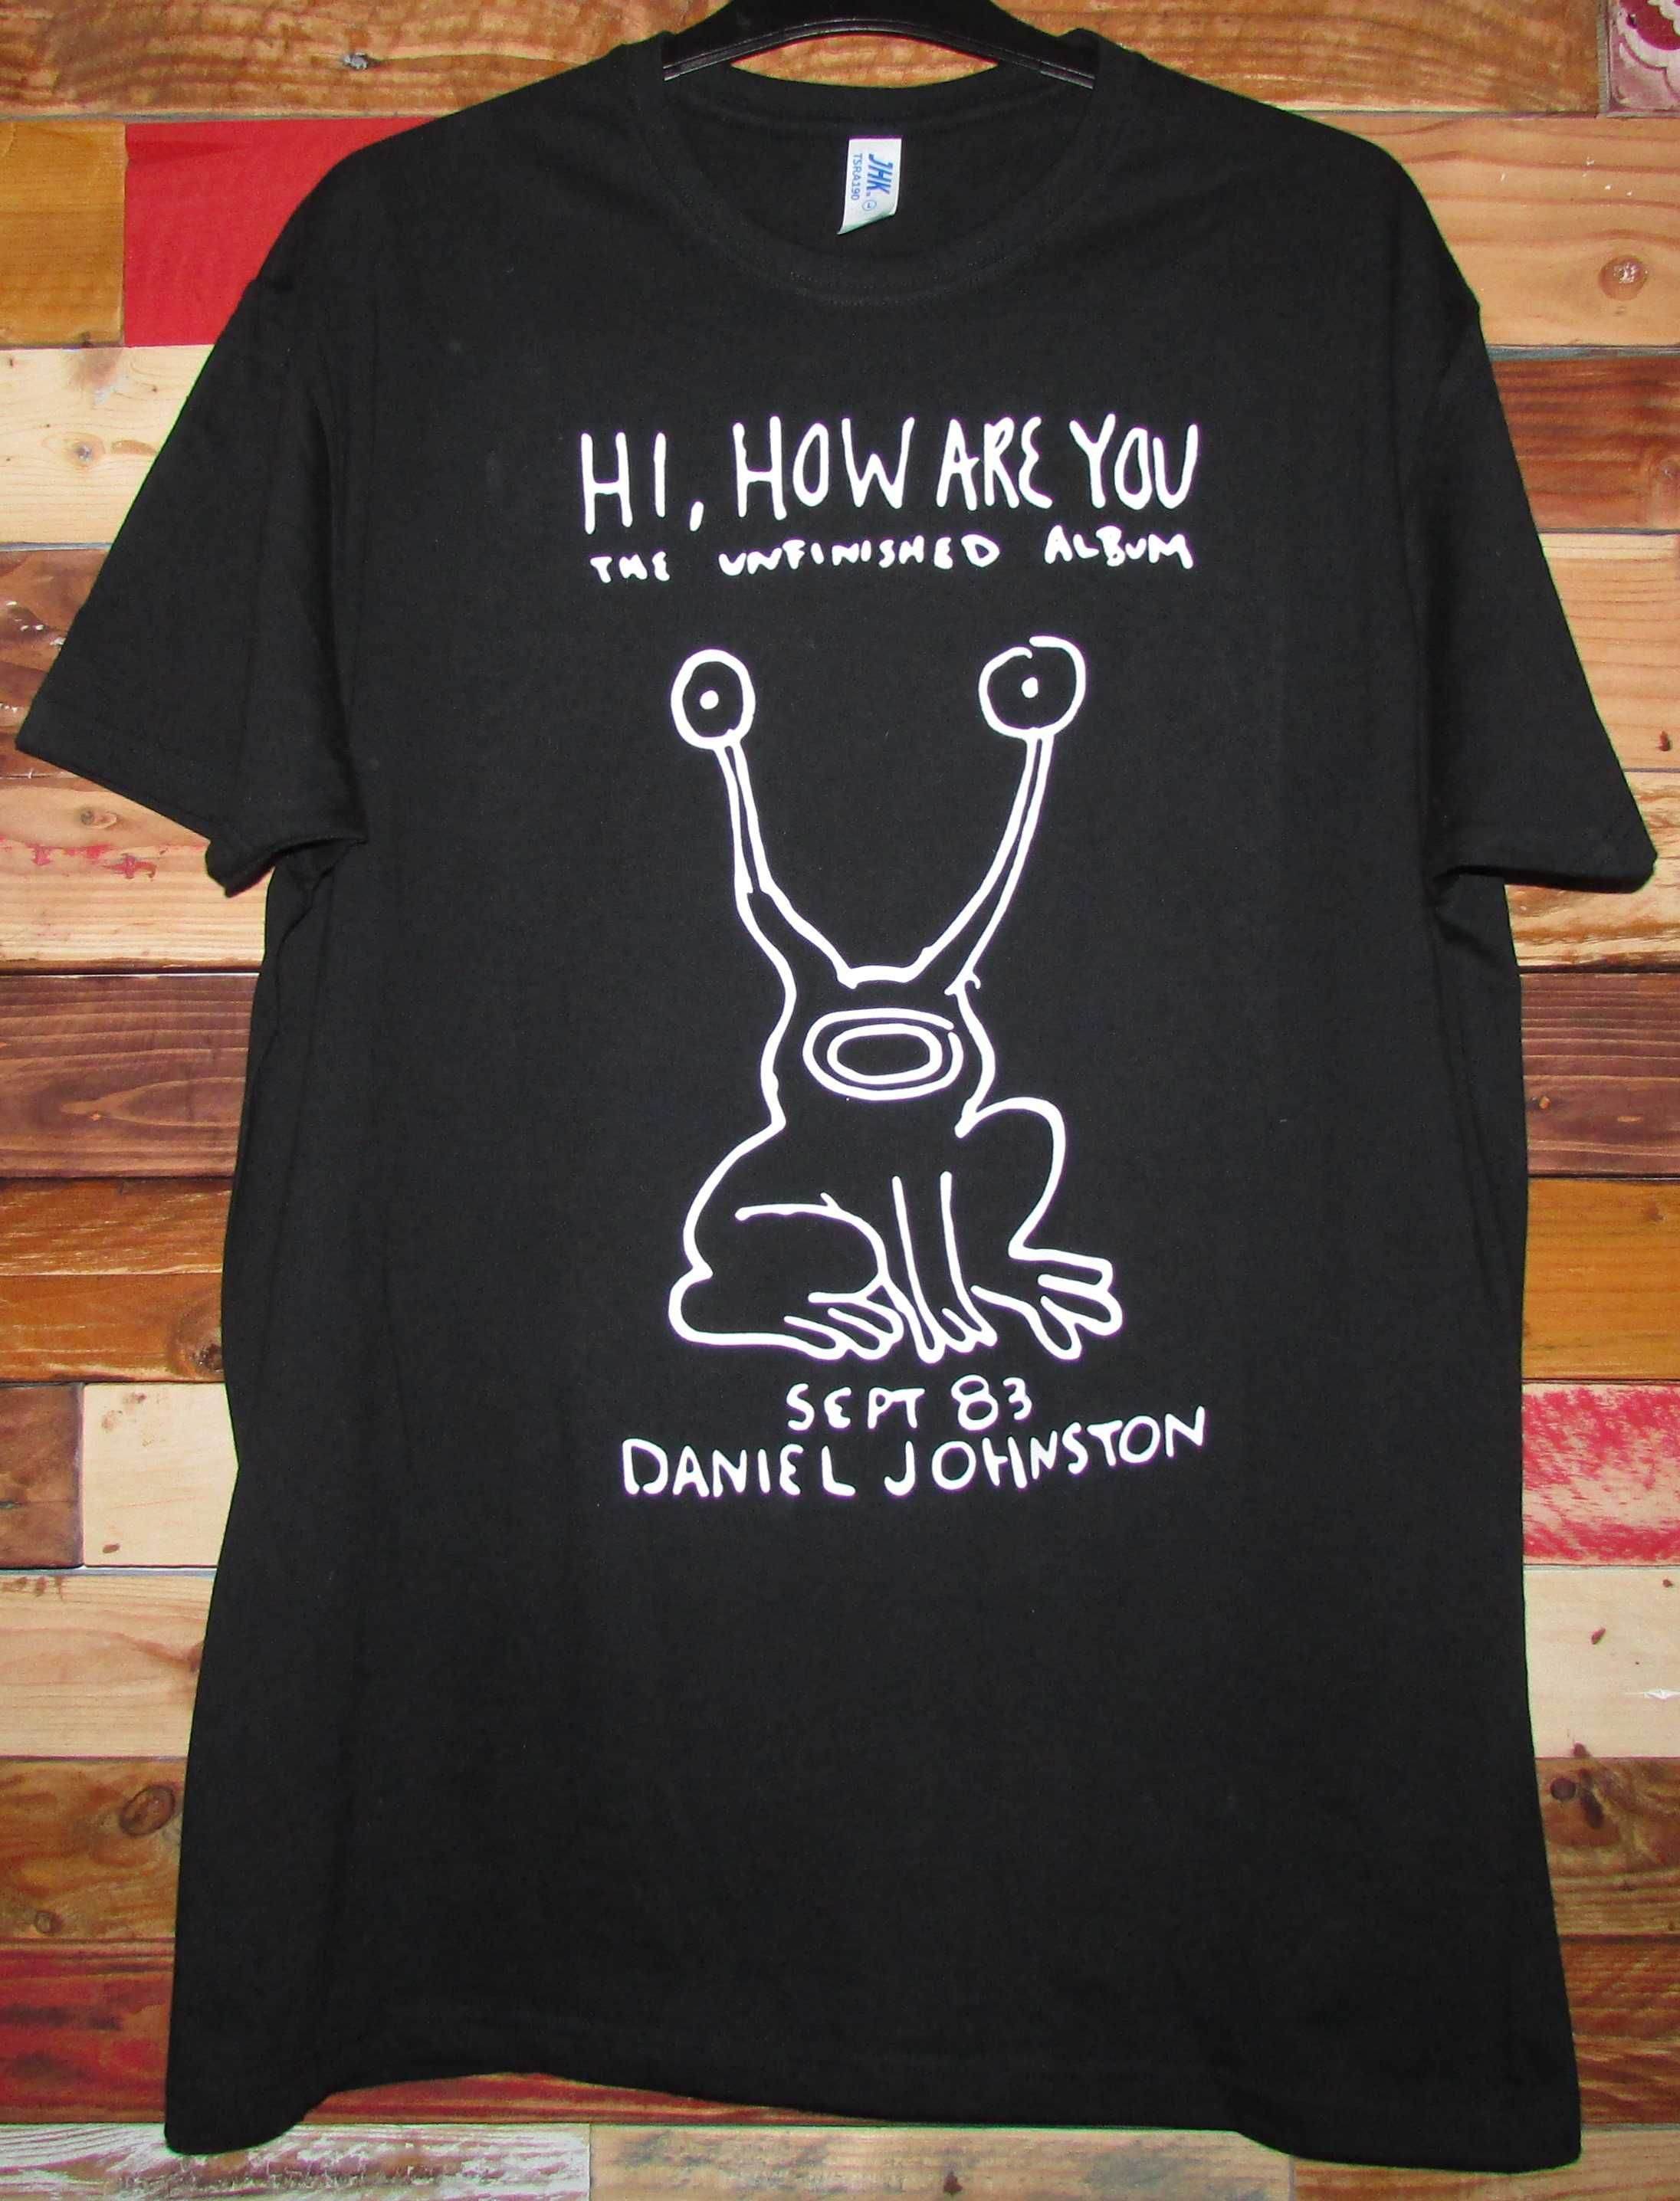 Elliott Smith / Daniel Johnston / Nick Drake / Modest Mouse - T-shirt